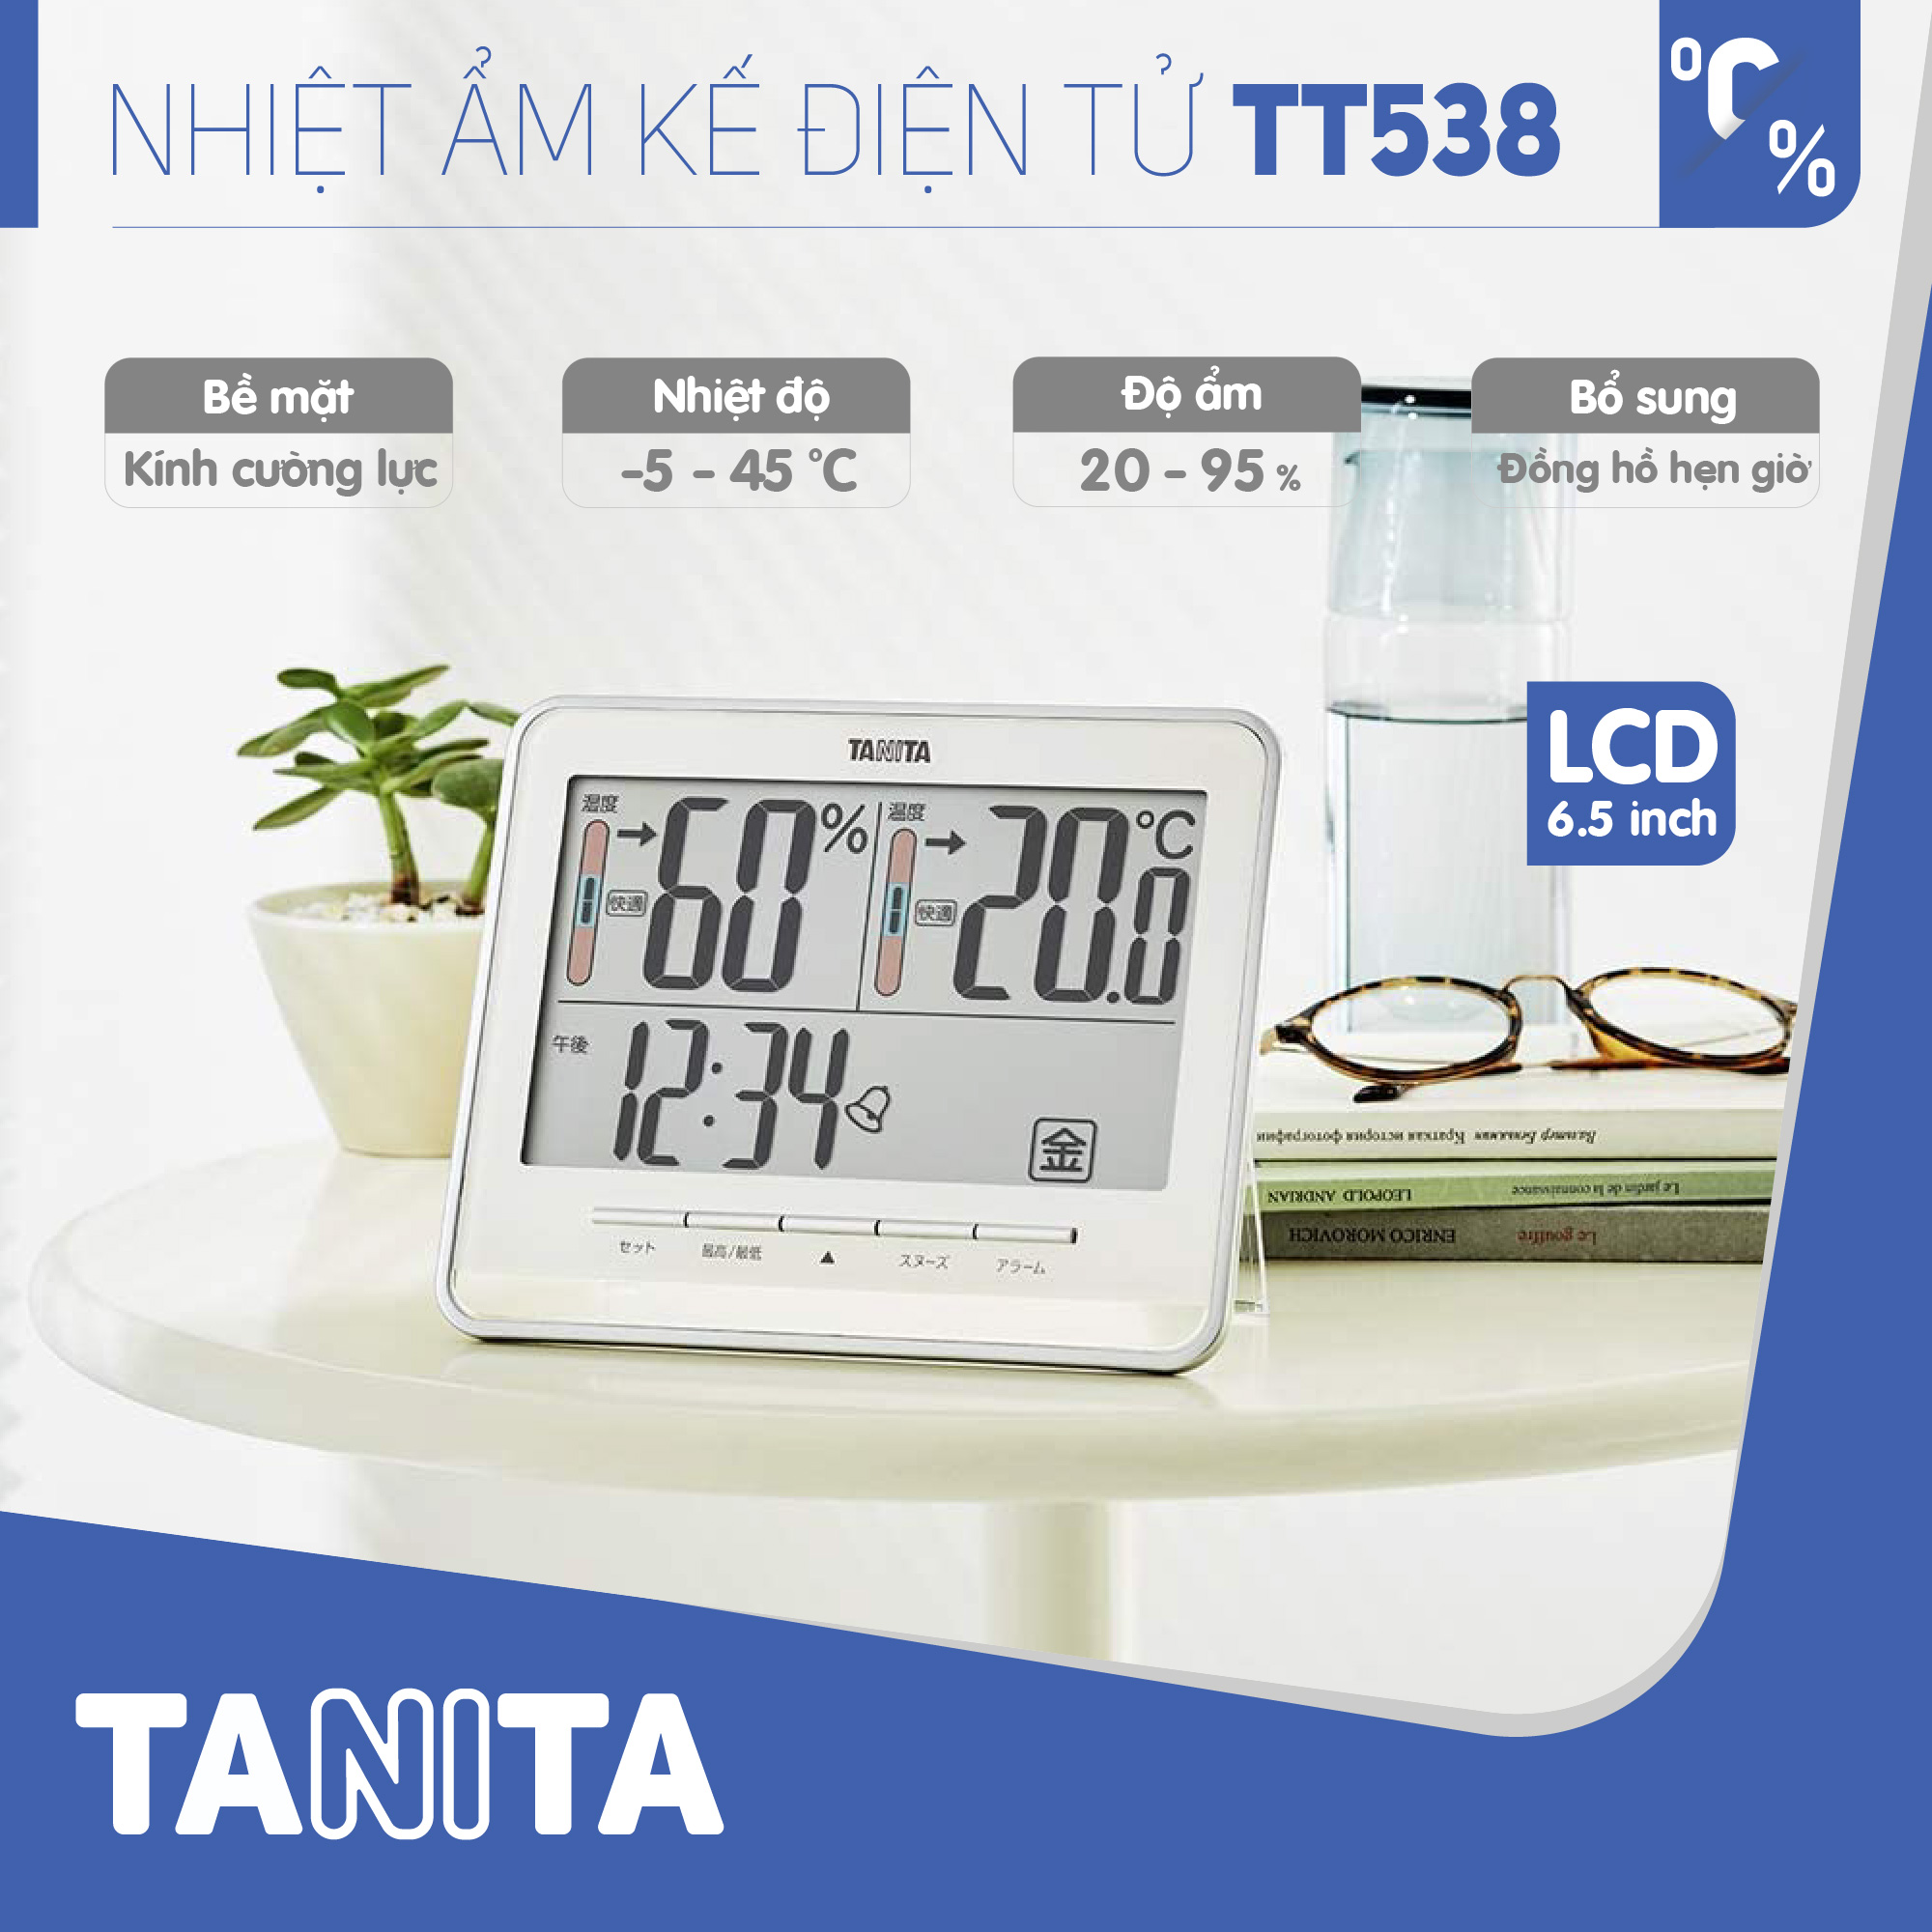 Nhiệt ẩm kế điện tử TANITA TT538 chính hãng nhật bản,thiết bị đo độ ẩm nhiệt độ chính xác,màn hình rõ ràng,hiển thị ngày giờ chuông báo thức,có lỗ treo,để bàn phù hợp trong phòng lạnh, bệnh viện, gia đình có trẻ sơ sinh